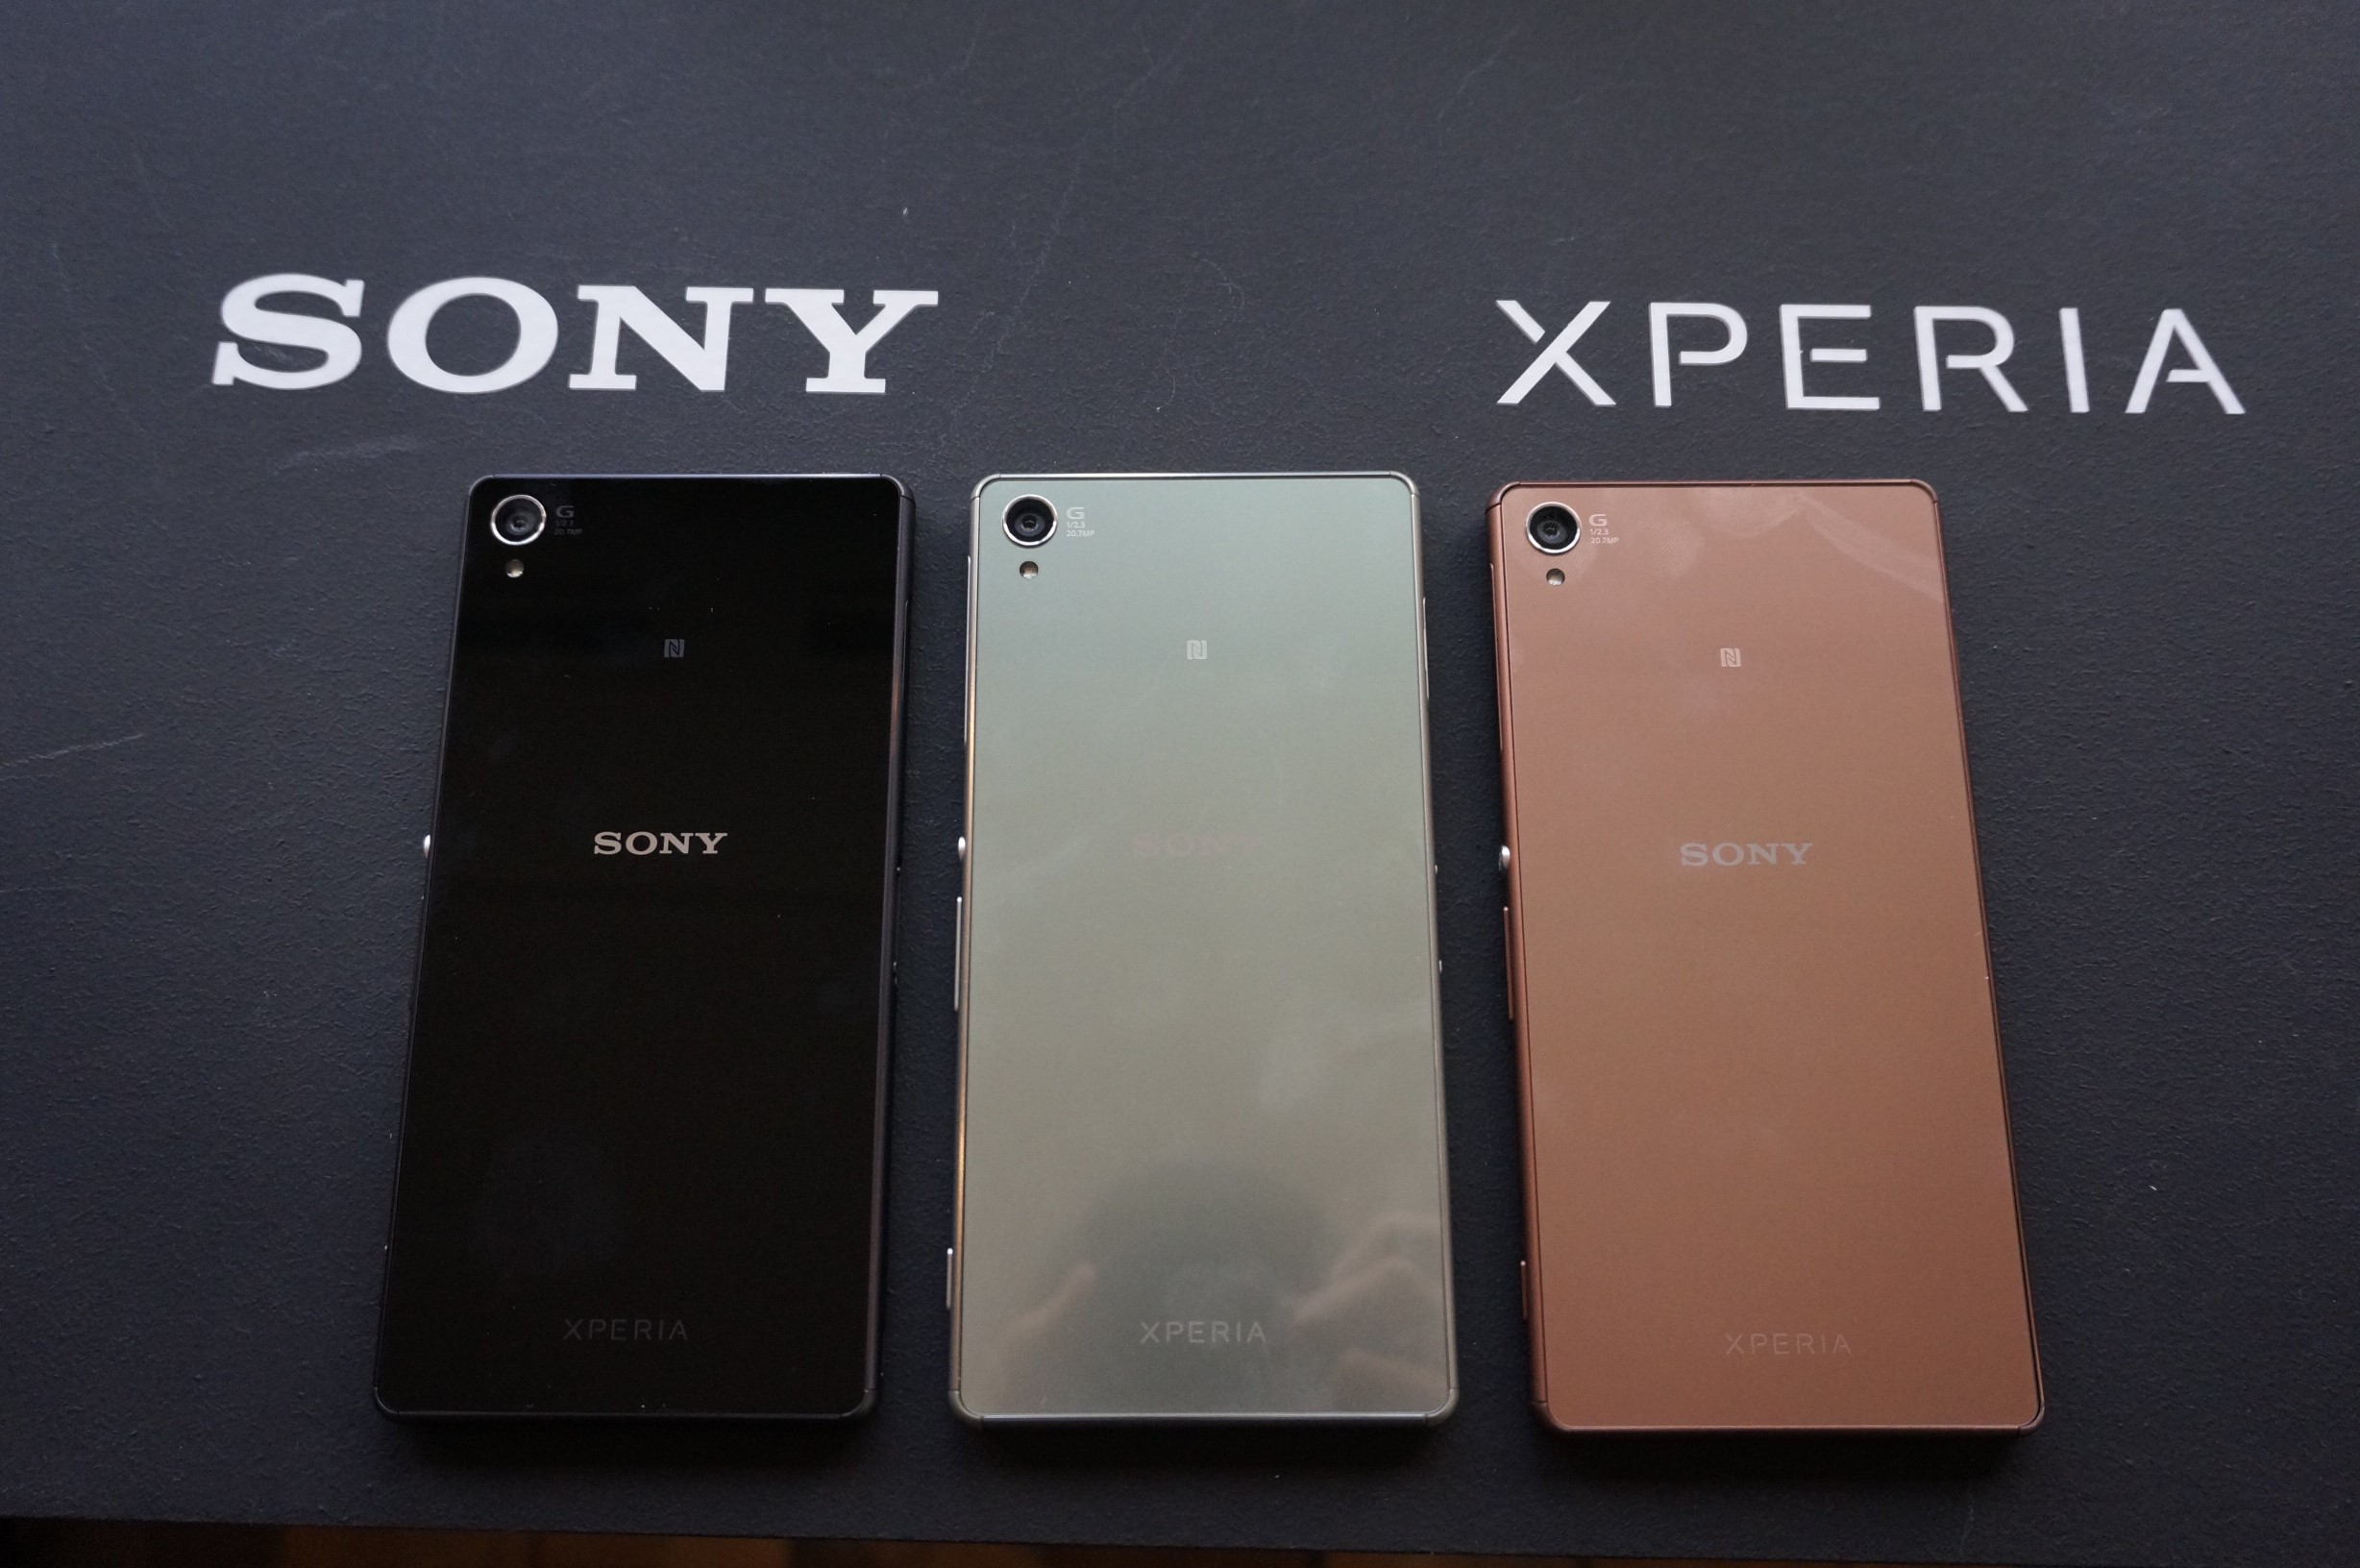 Sony อาจจะเปลี่ยนแผน ออกสมาร์ทโฟนรุ่นใหม่ให้ช้าลง เน้นให้รุ่นเก่าอยู่นานขึ้น